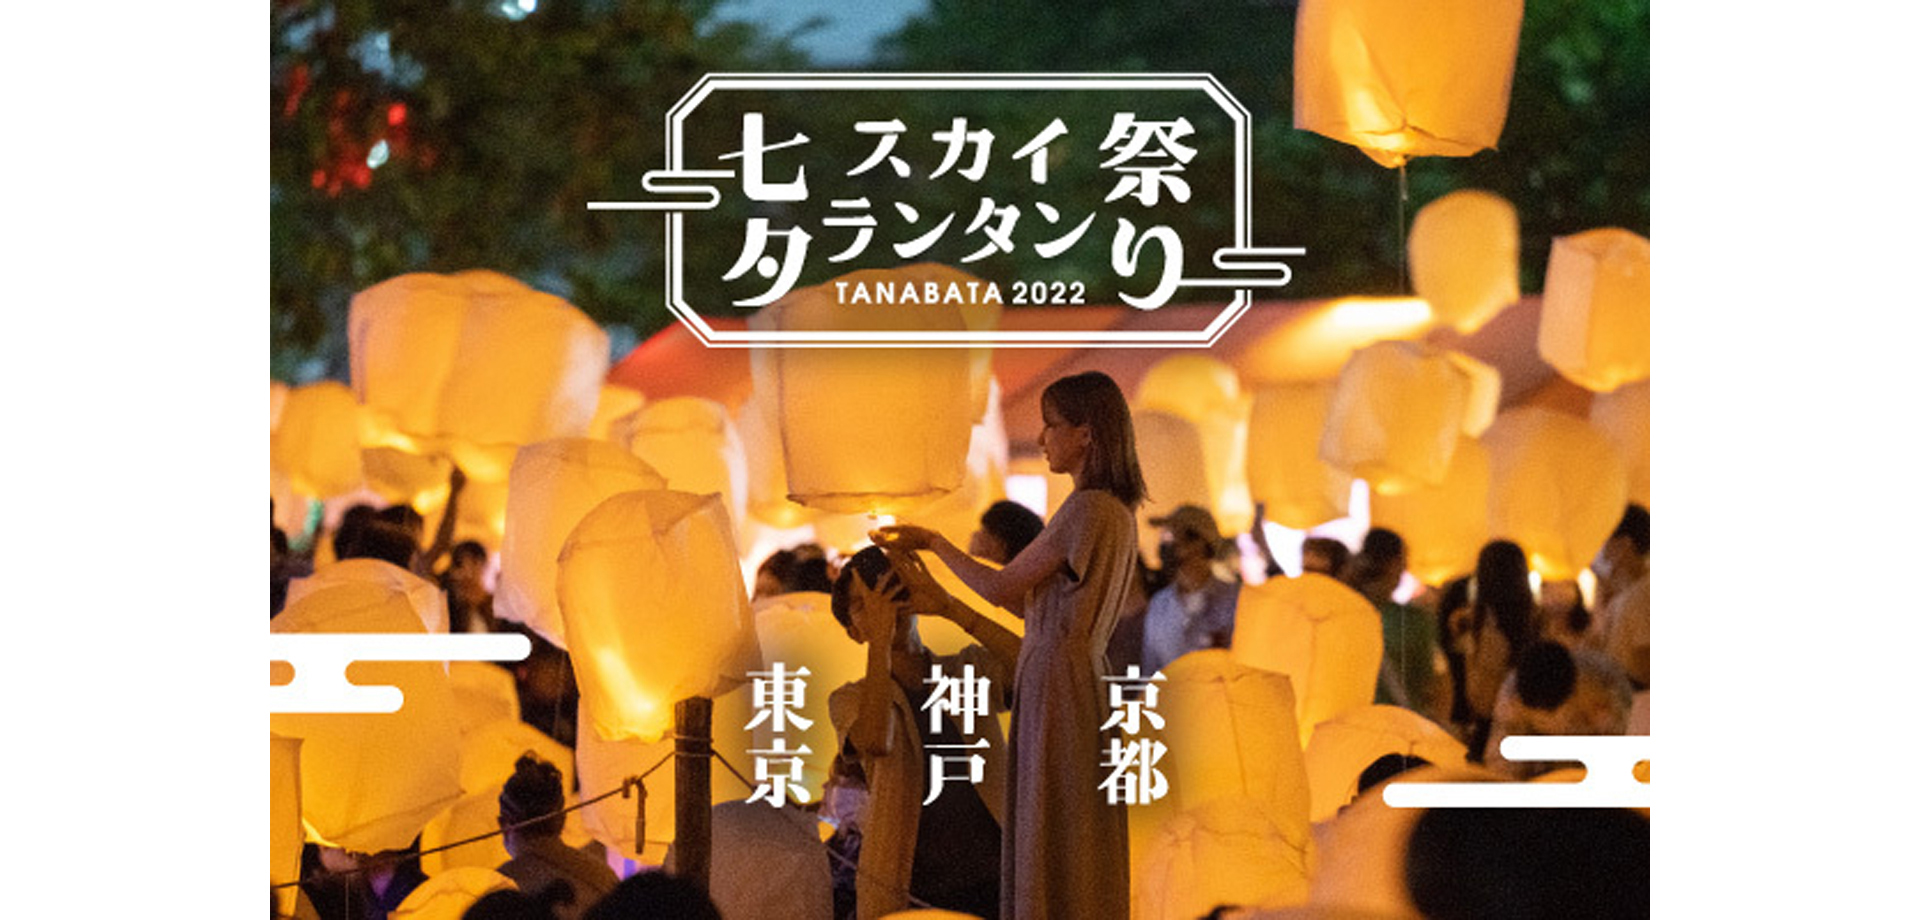 日本最大のランタン祭り「七夕スカイランタン祭り2022」